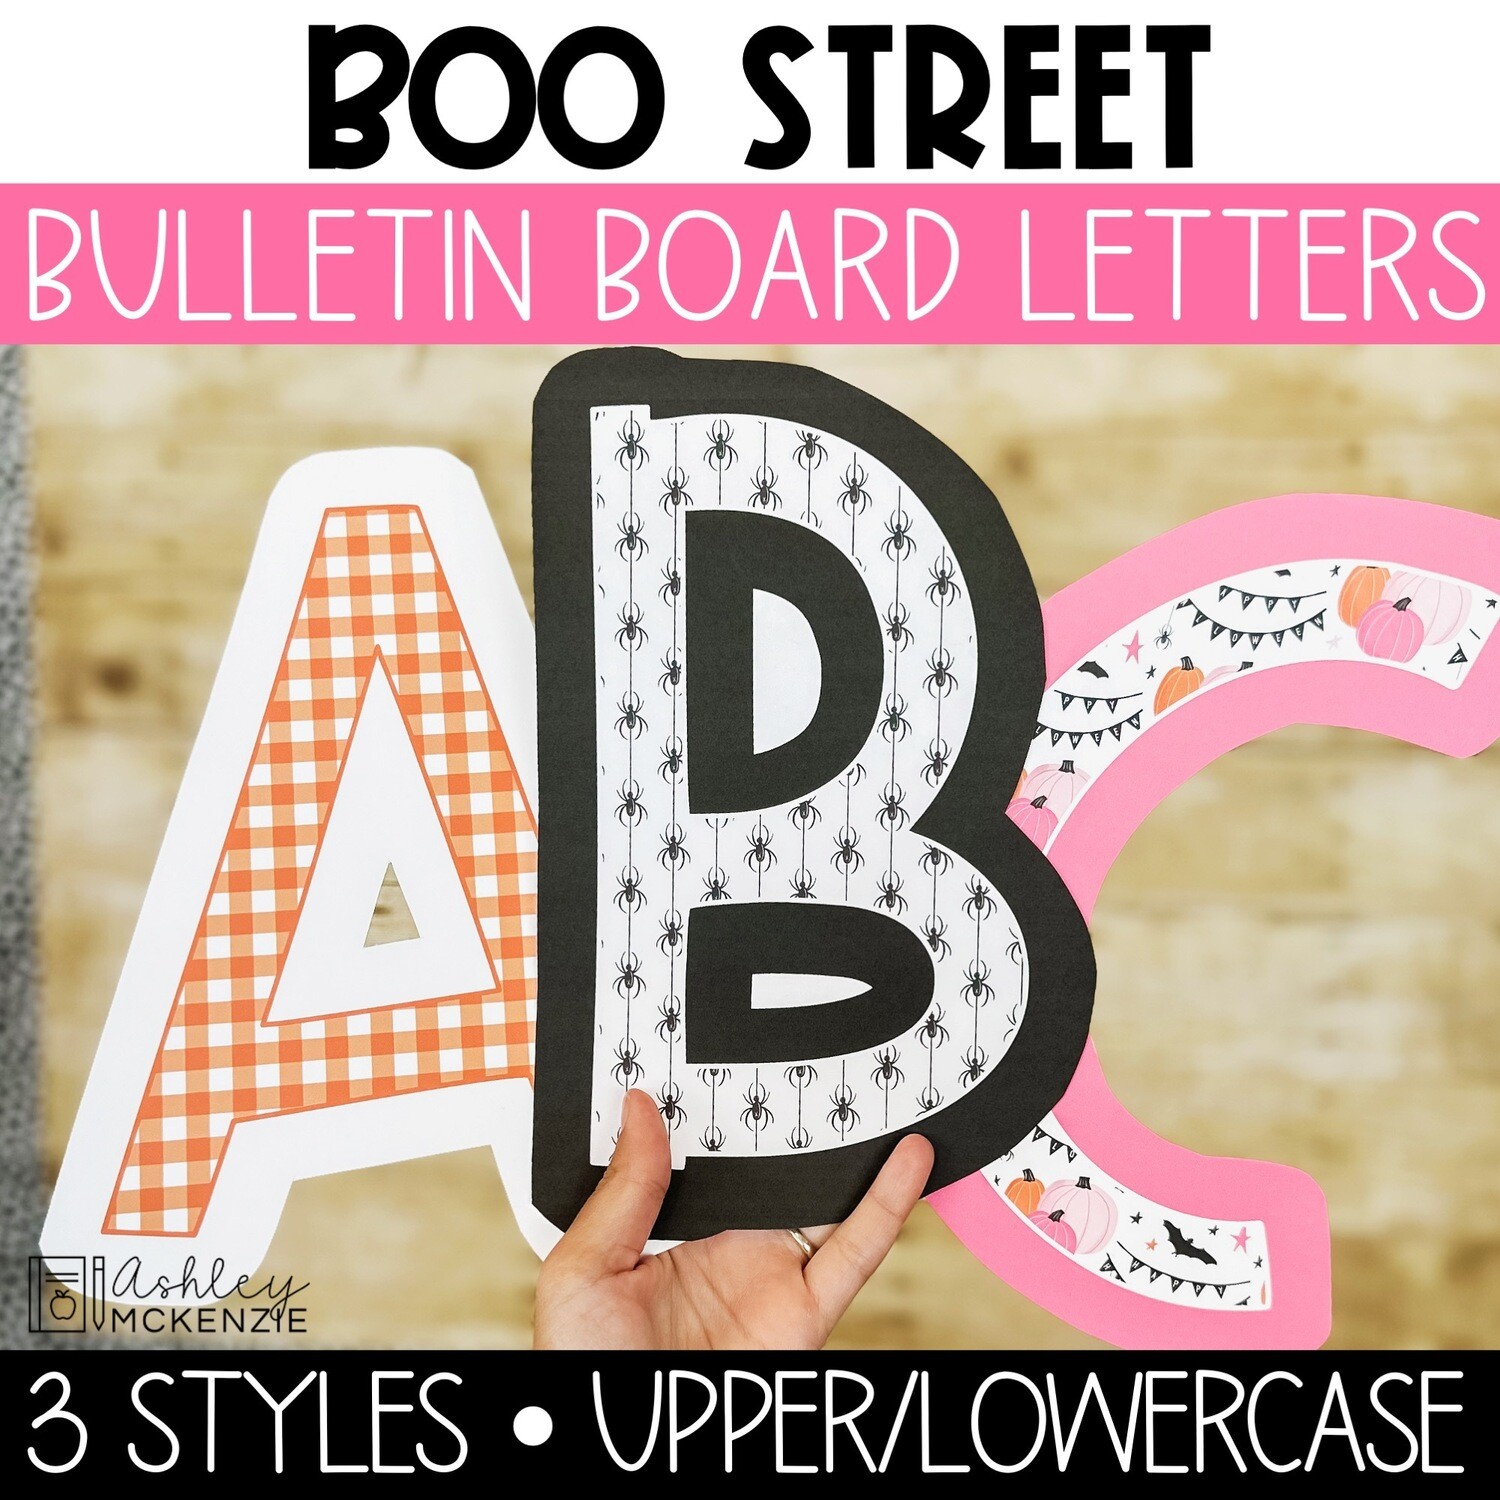 Retro Halloween Bulletin Board Letters Download